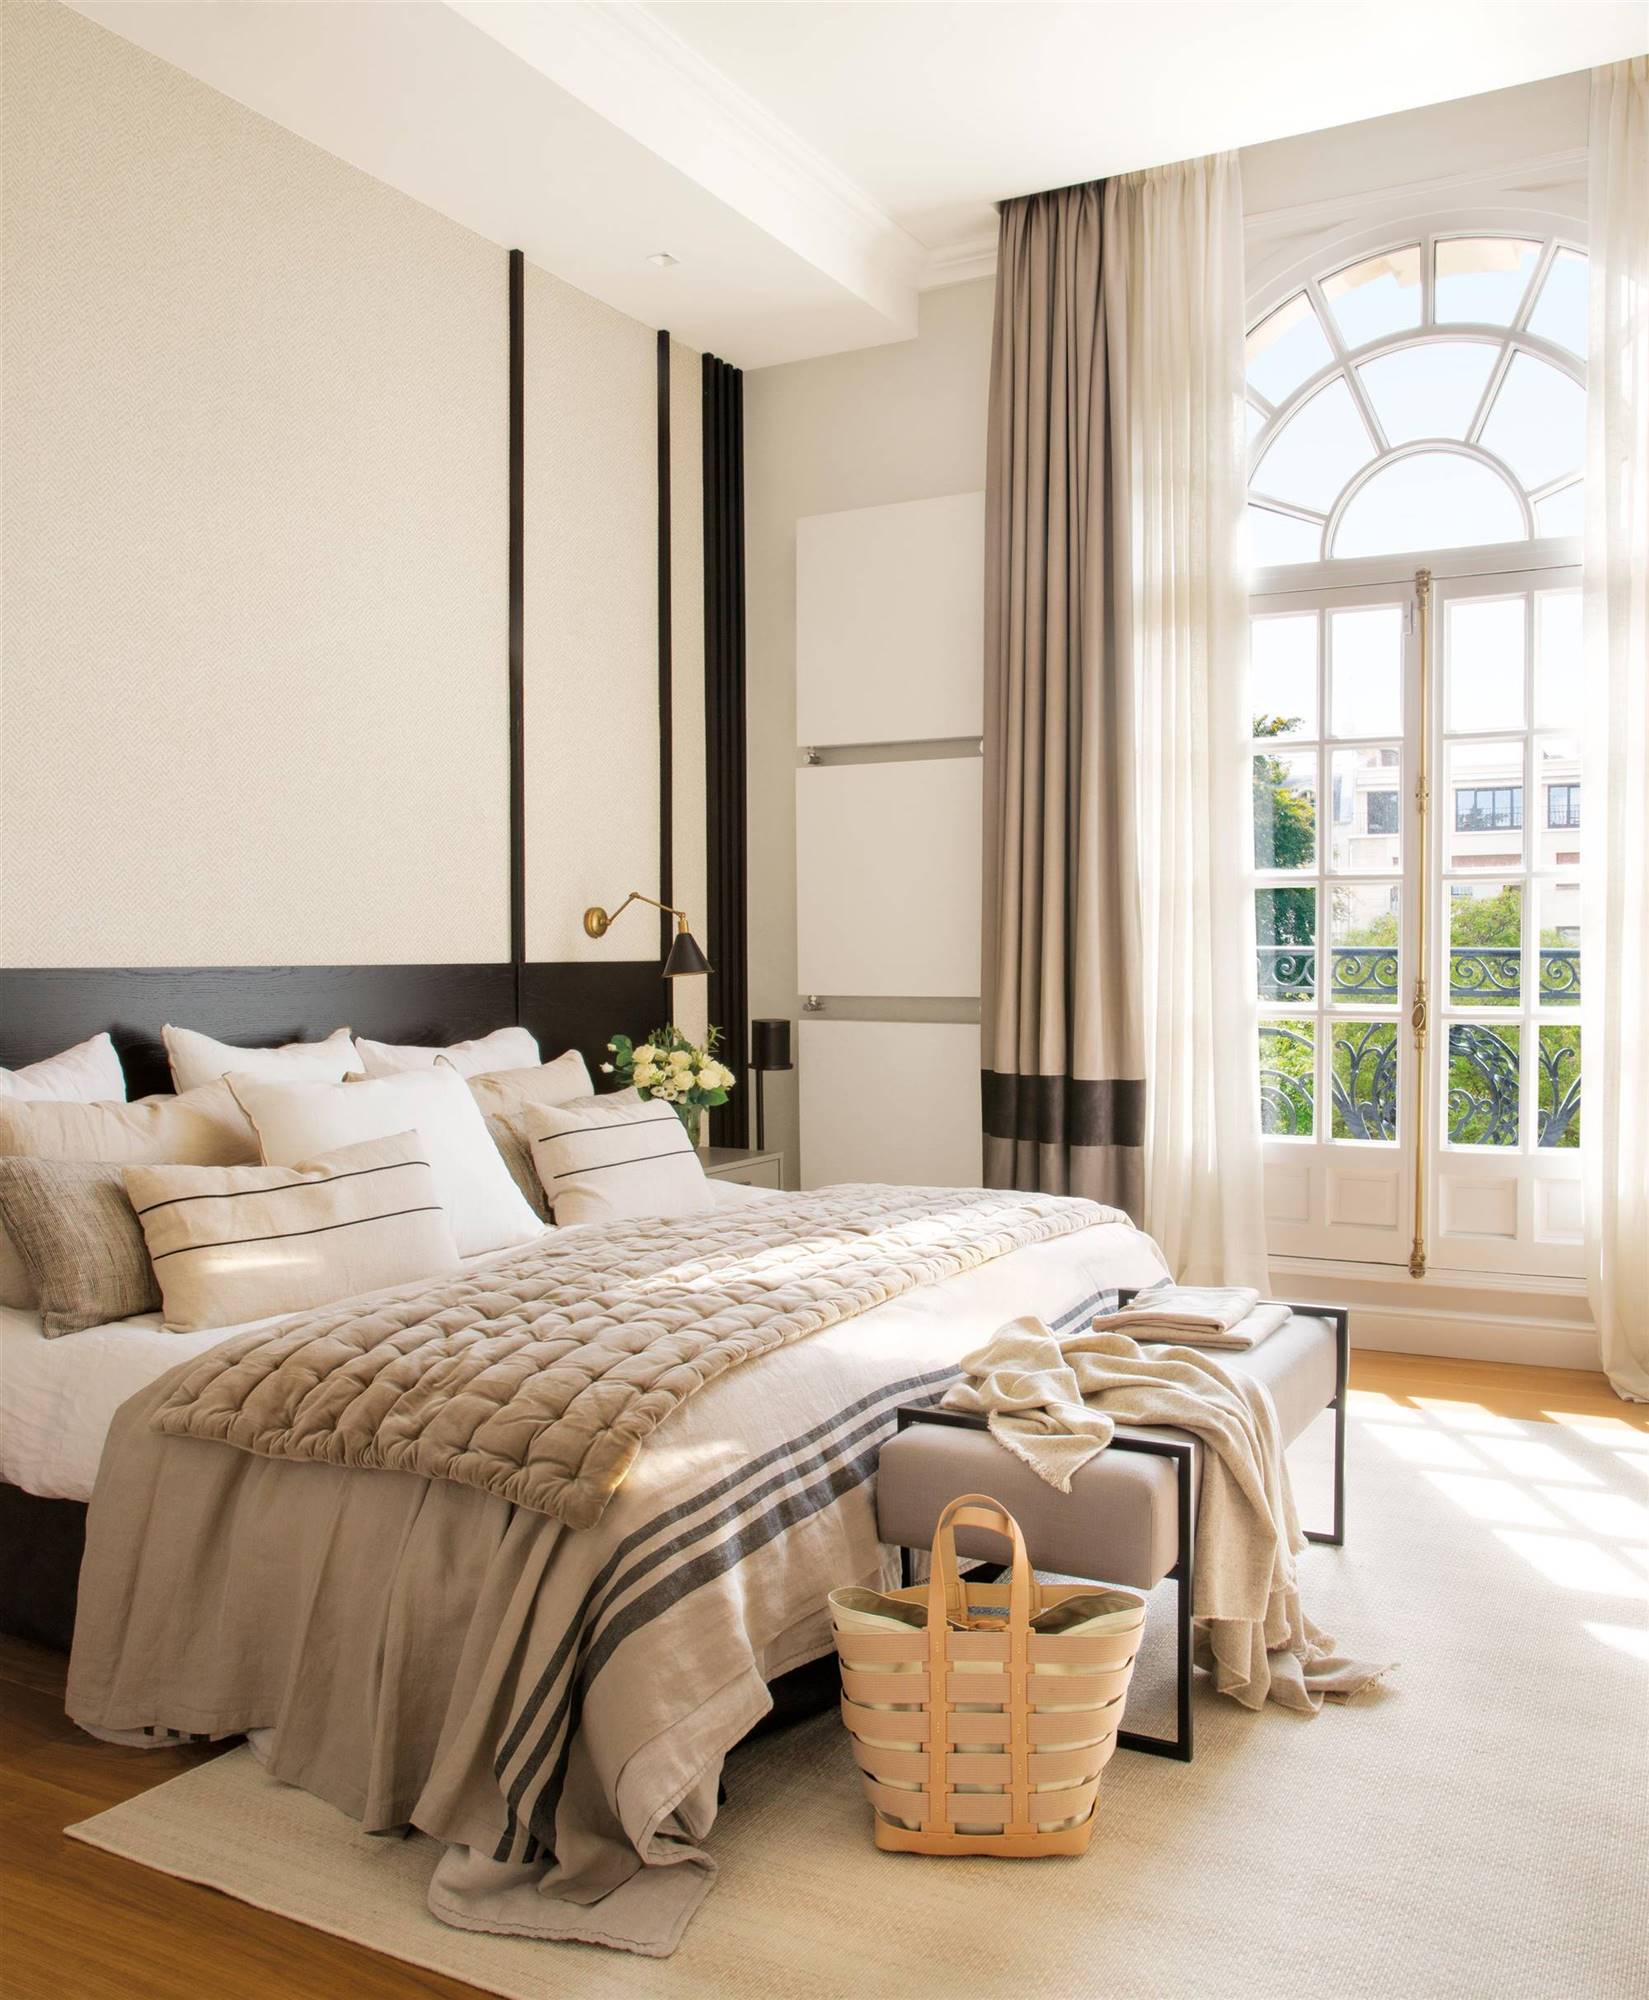 Dormitorio con techos altos decorado en blanco, beige y negro.